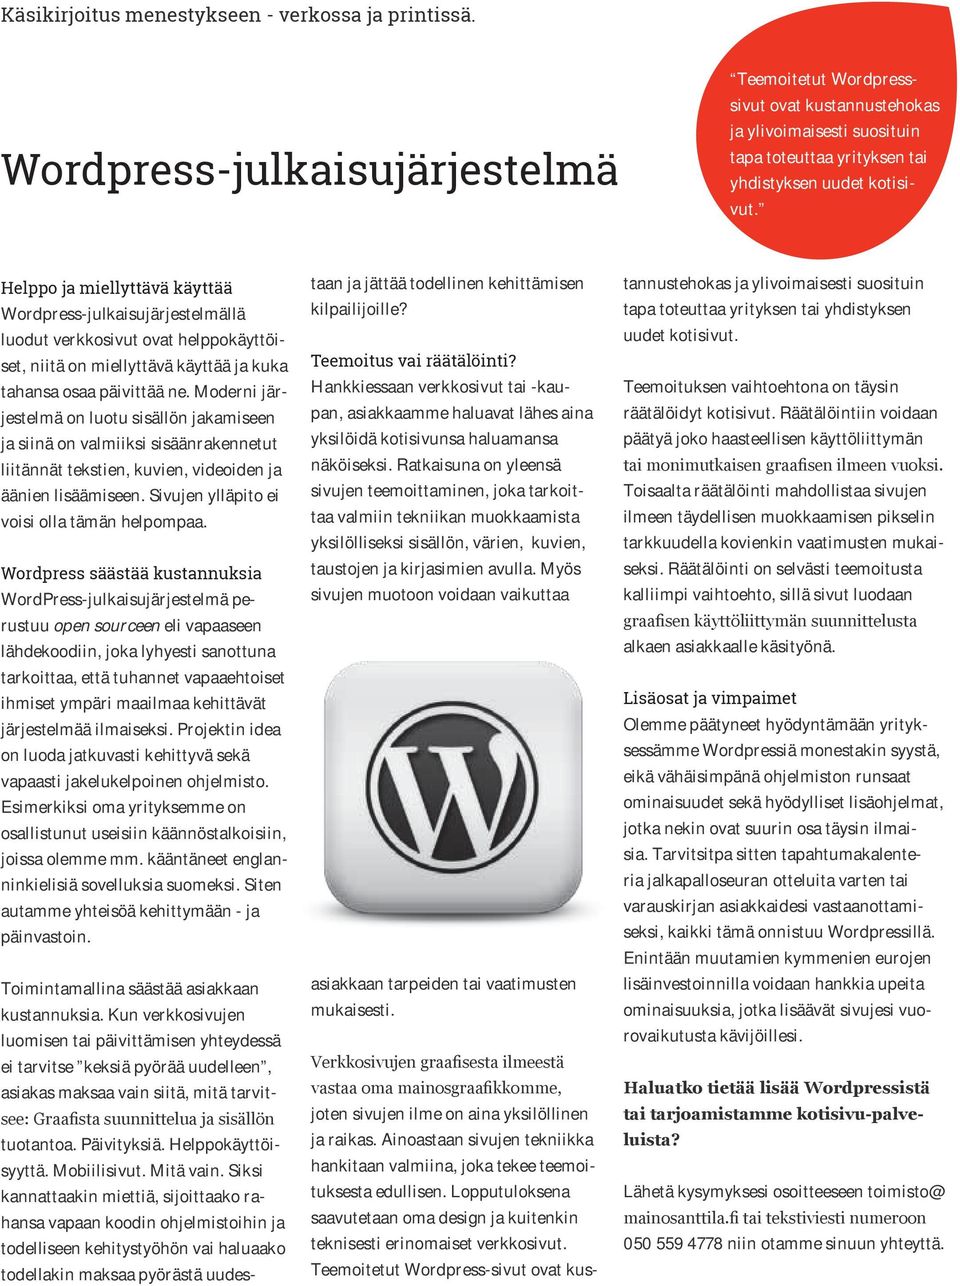 Helppo ja miellyttävä käyttää Wordpress-julkaisujärjestelmällä luodut verkkosivut ovat helppokäyttöiset, niitä on miellyttävä käyttää ja kuka tahansa osaa päivittää ne.